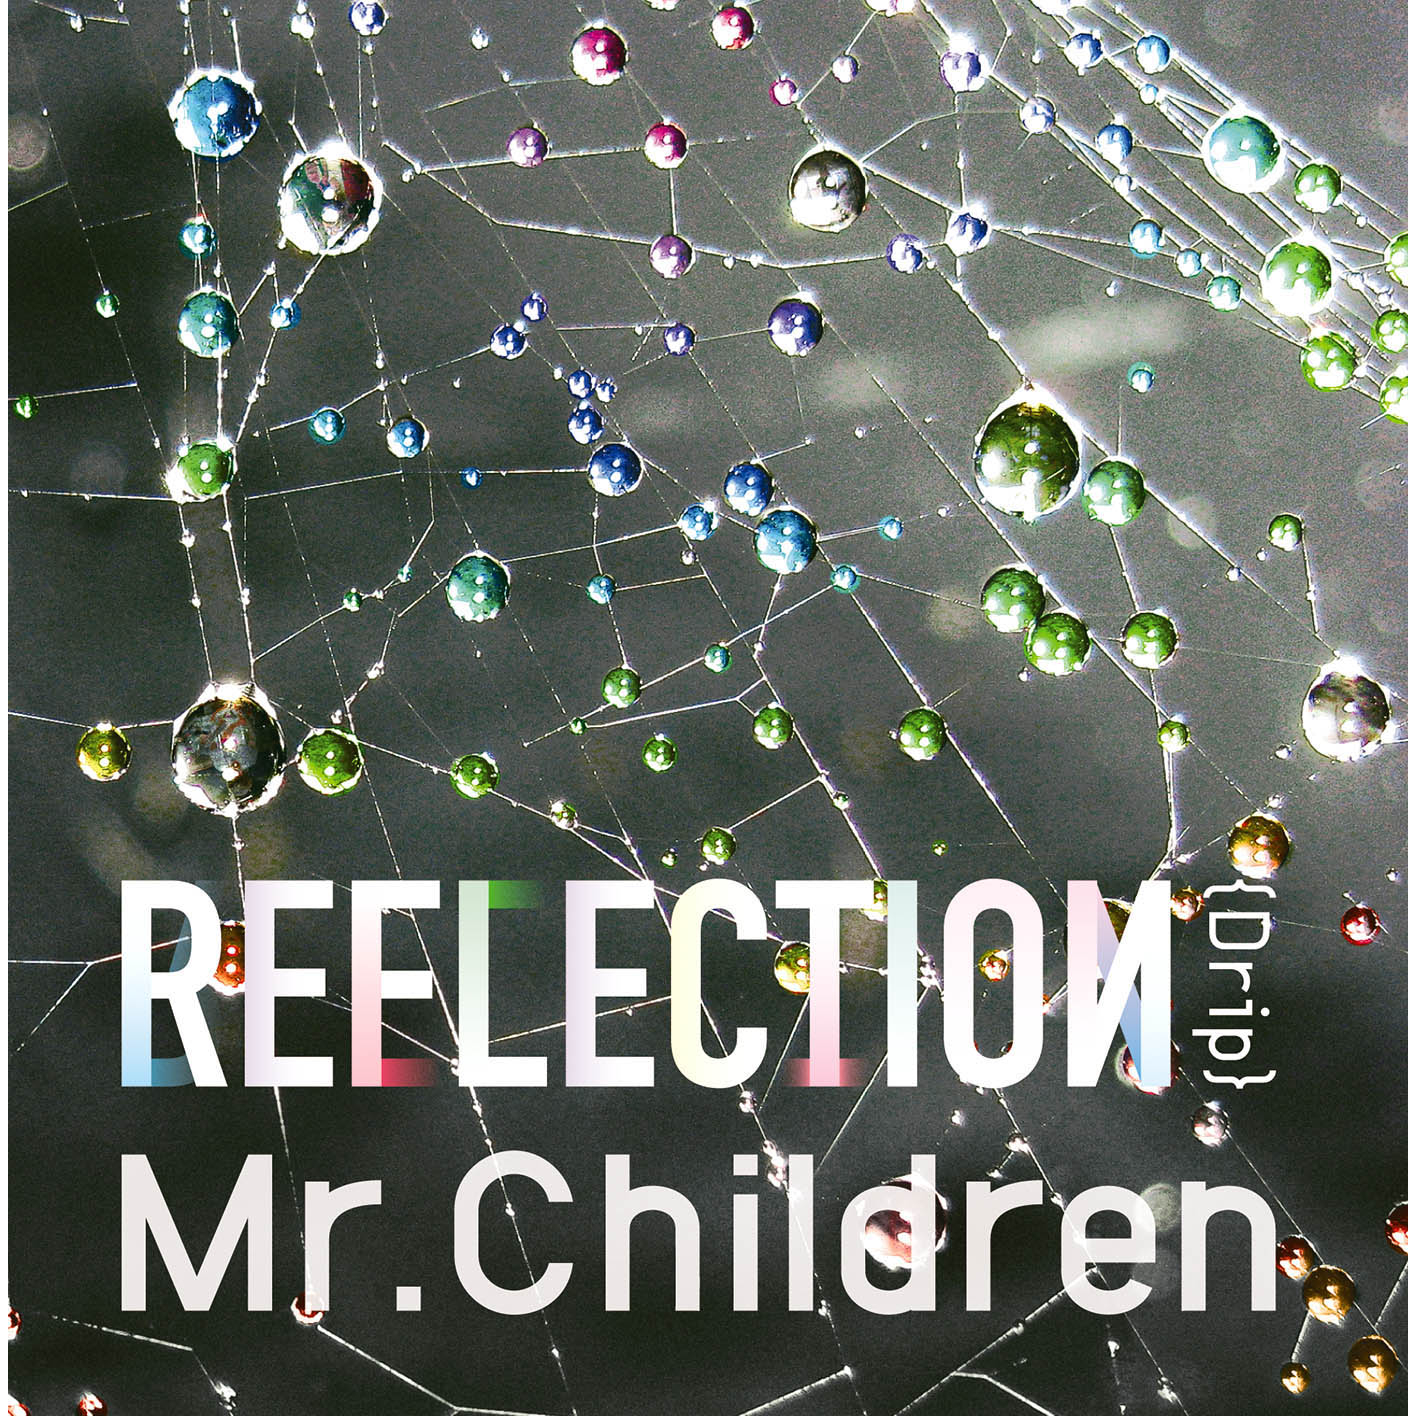 Mr.Children (ミスターチルドレン) 18thアルバム『REFLECTION (リフレクション)』(2015年6月4日発売) 高画質